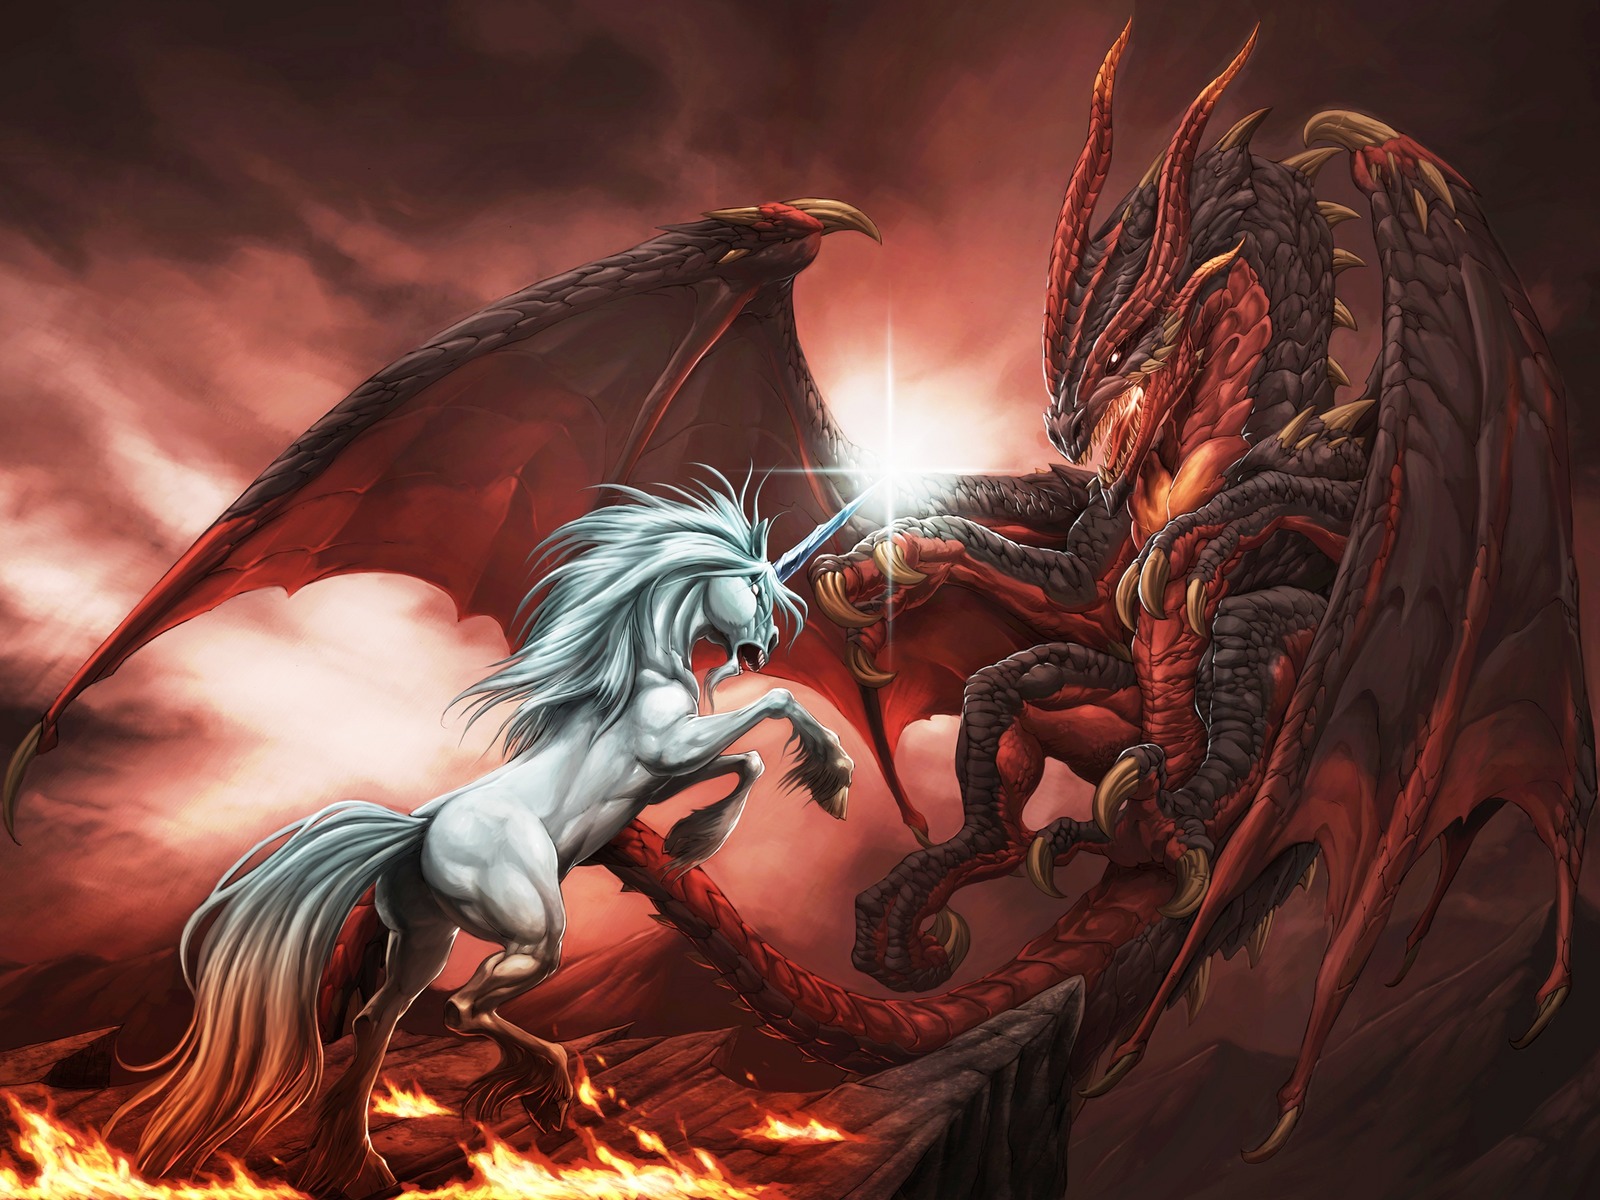 3d обои Война единорога с драконом, свирепая схватка на горящей скале  эмоциональные # 90011